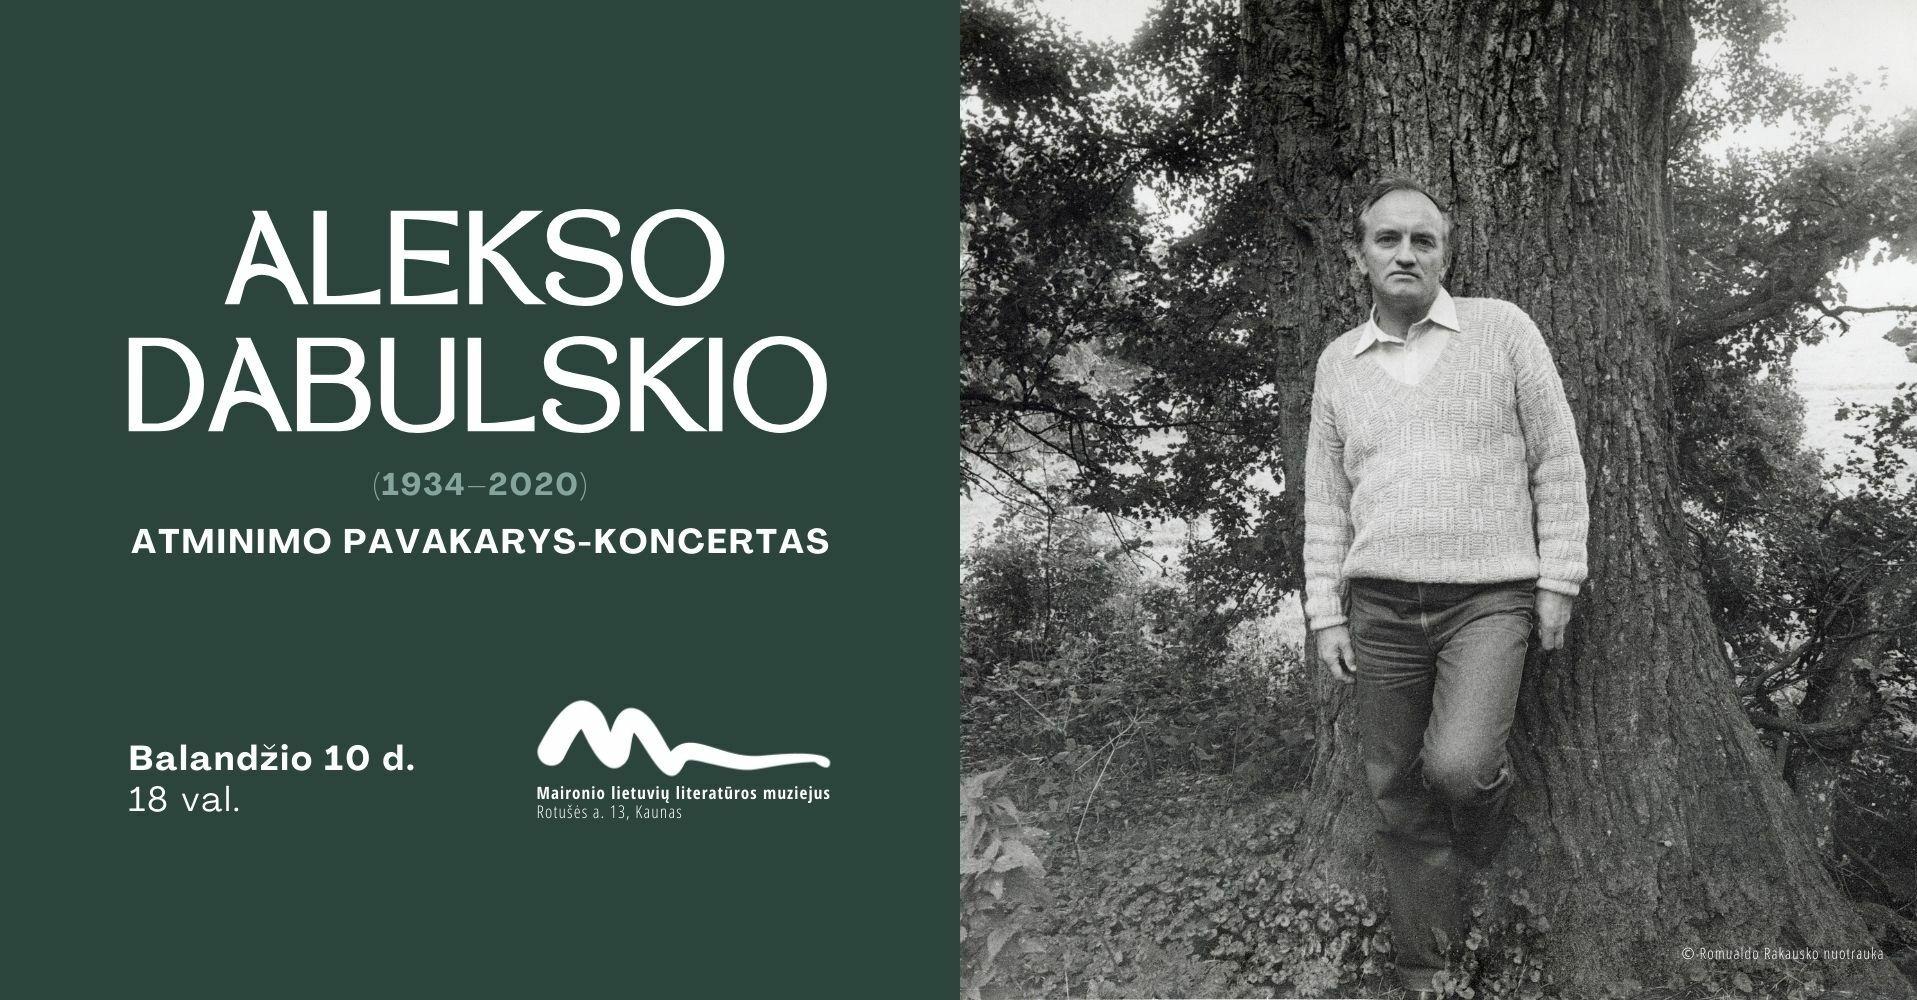 Alekso Dabulskio (1934–2020) atminimo pavakarys-koncertas